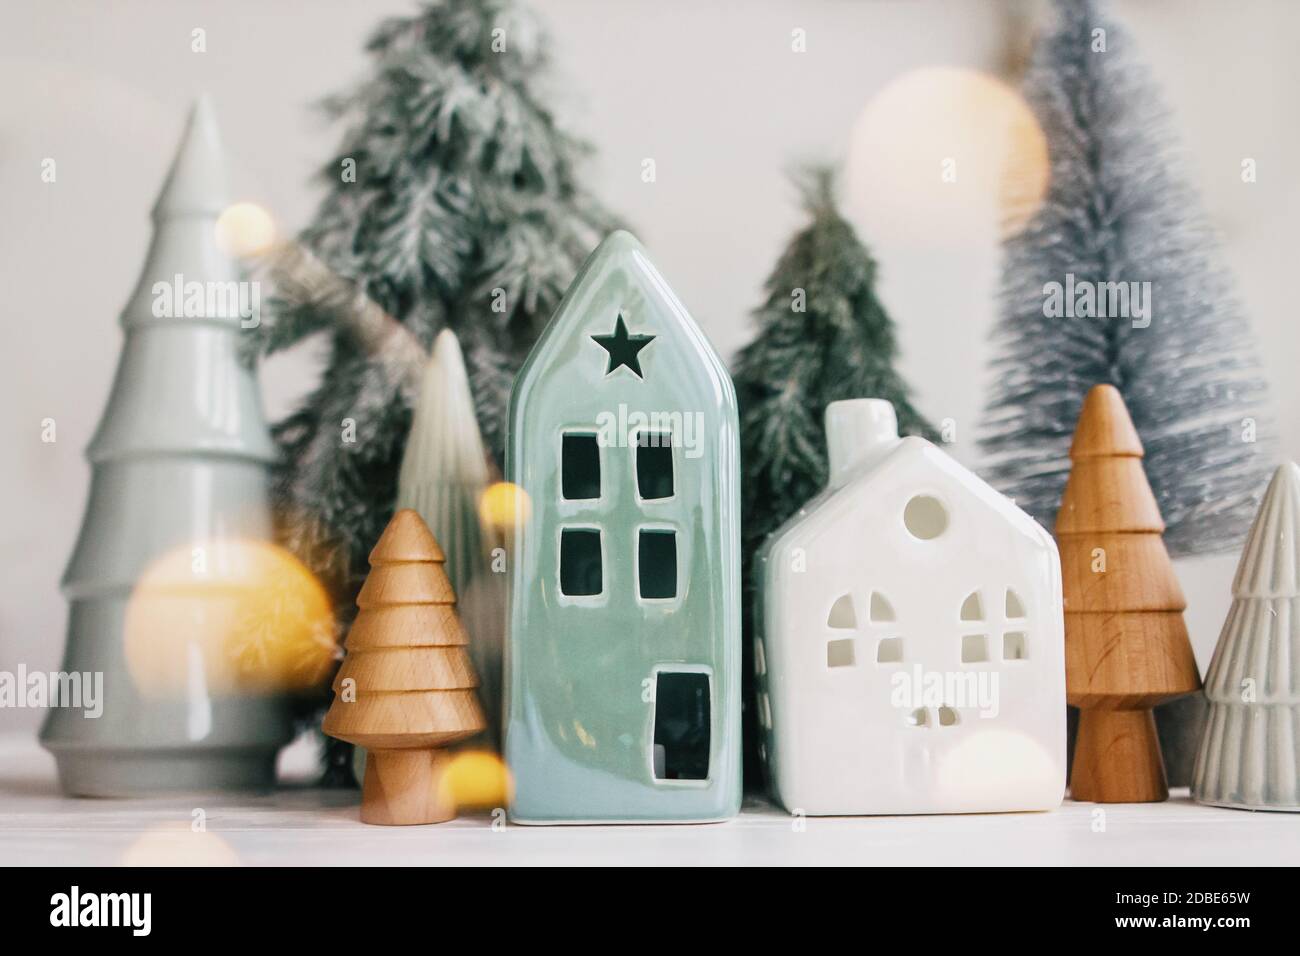 Village De Noël Miniature Avec Maisons, Arbres, Lumières Et Neige Banque  D'Images et Photos Libres De Droits. Image 217413488